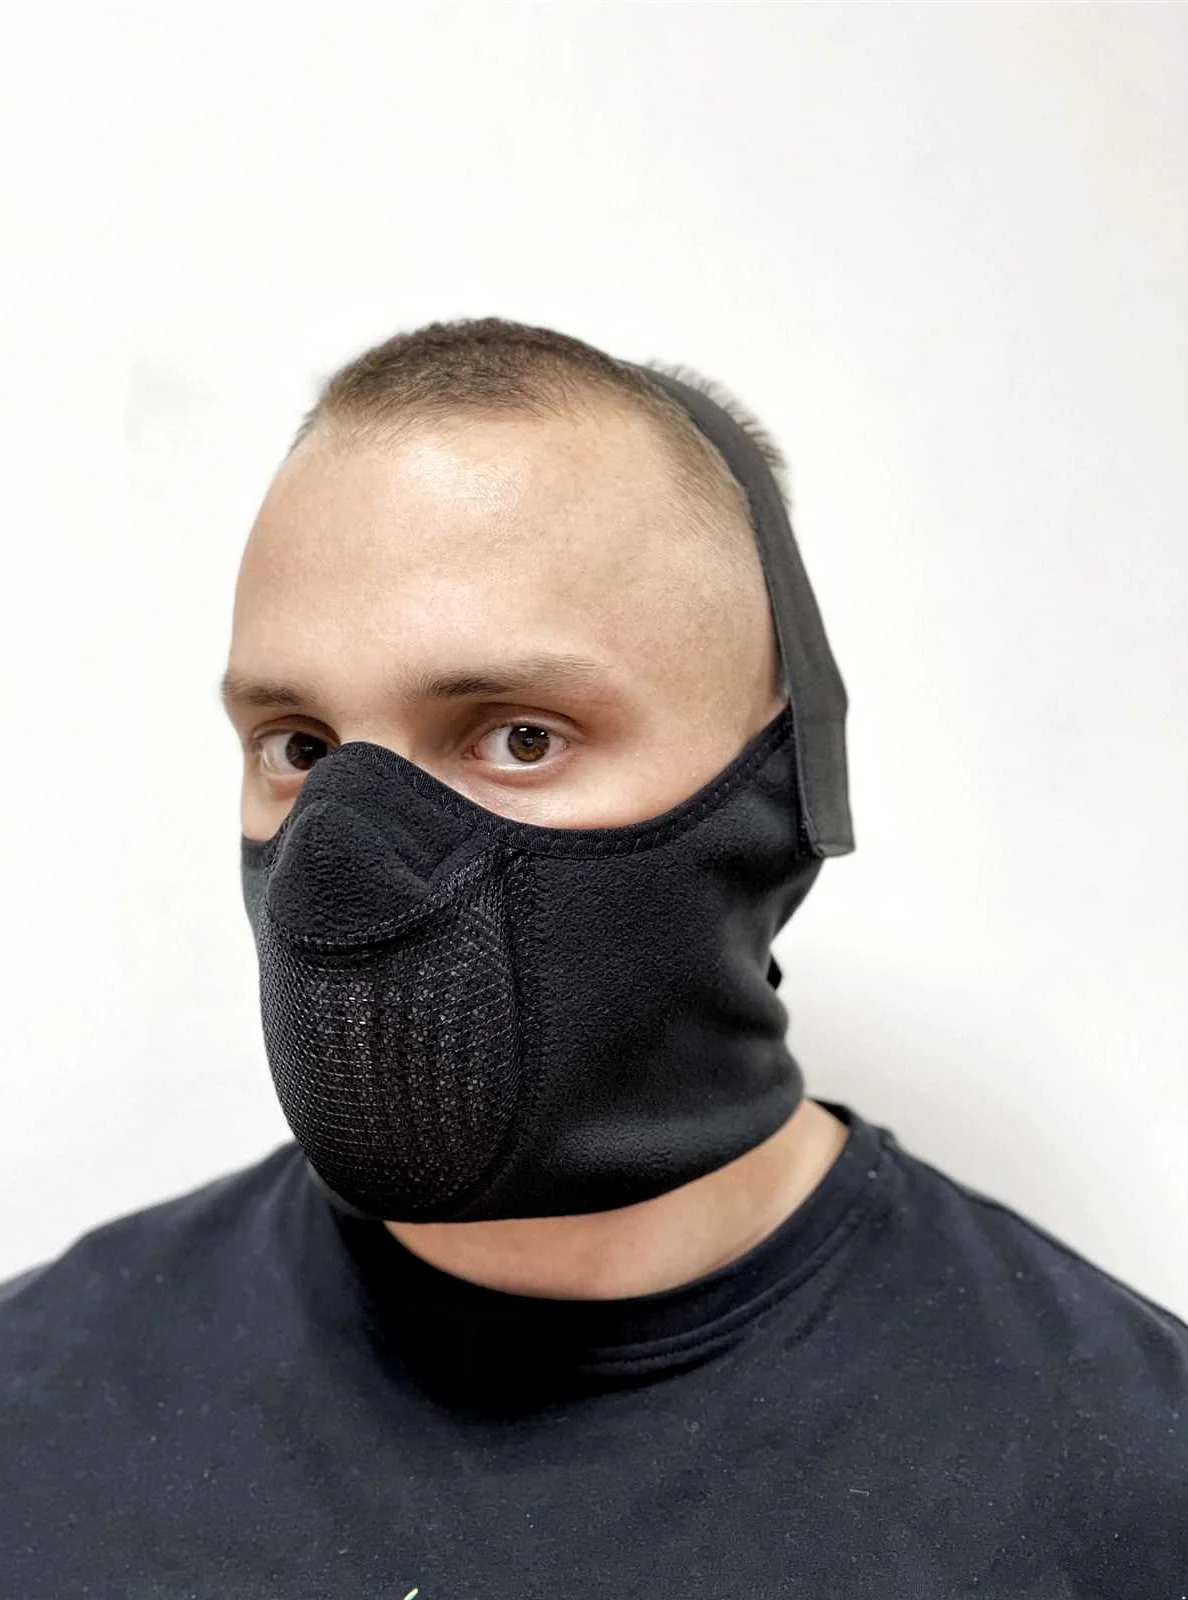 Тепловая маска для лица от холода: эффективная защита и комфорт